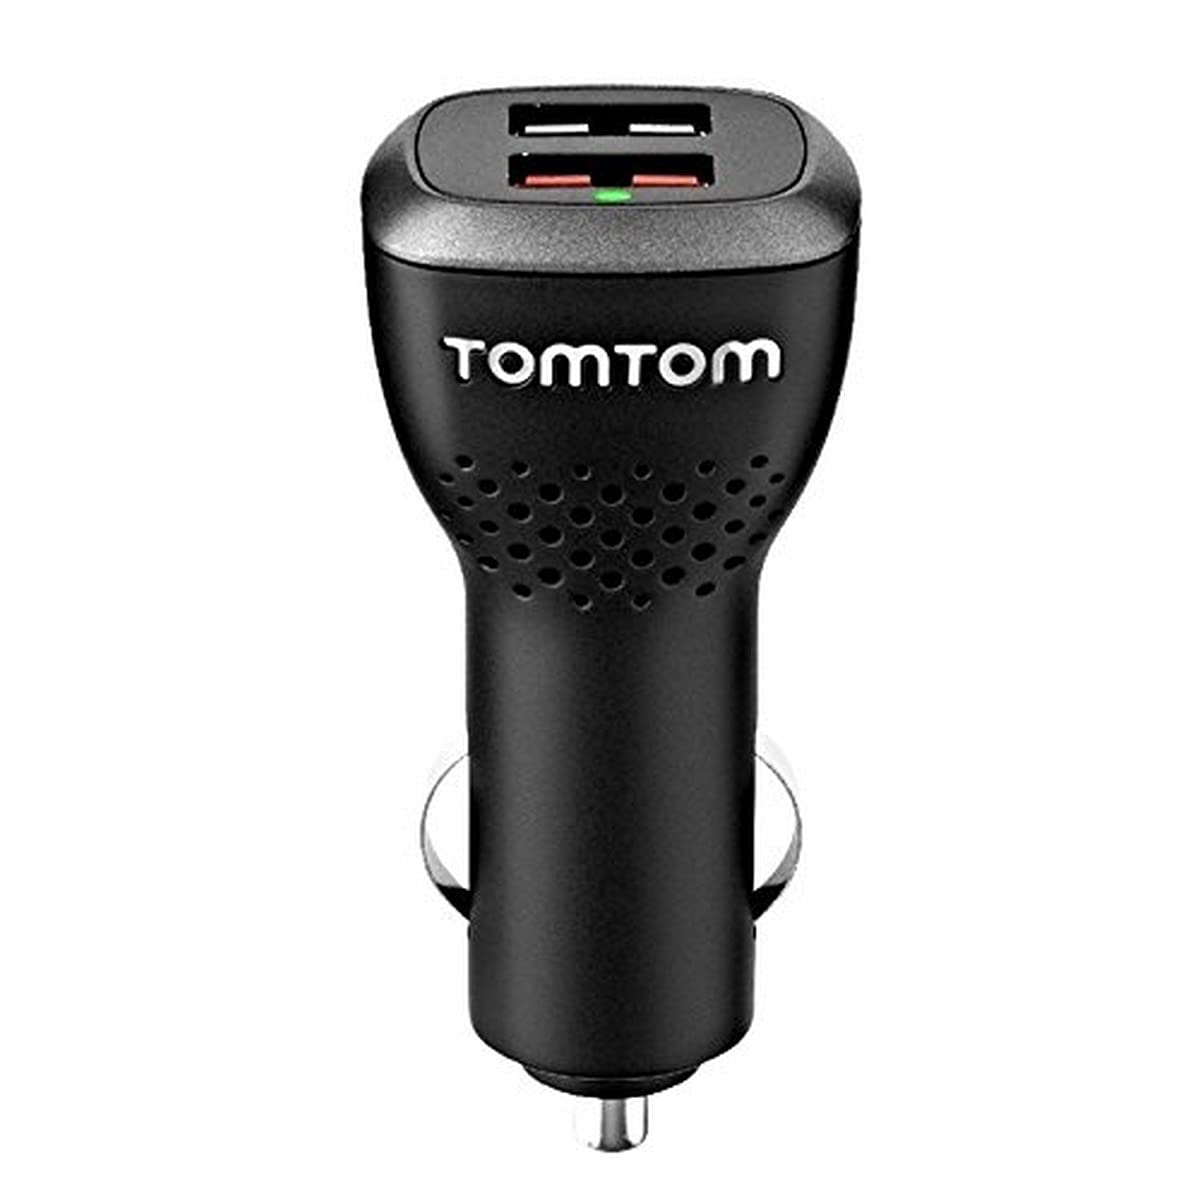 TomTom Duales USB Auto-Schnellladegerät (geeignet für alle TomTom Navigationsgeräte, z.B. Start, Via, GO Basic, GO Essential, Rider, GO Professional, GO Camper)